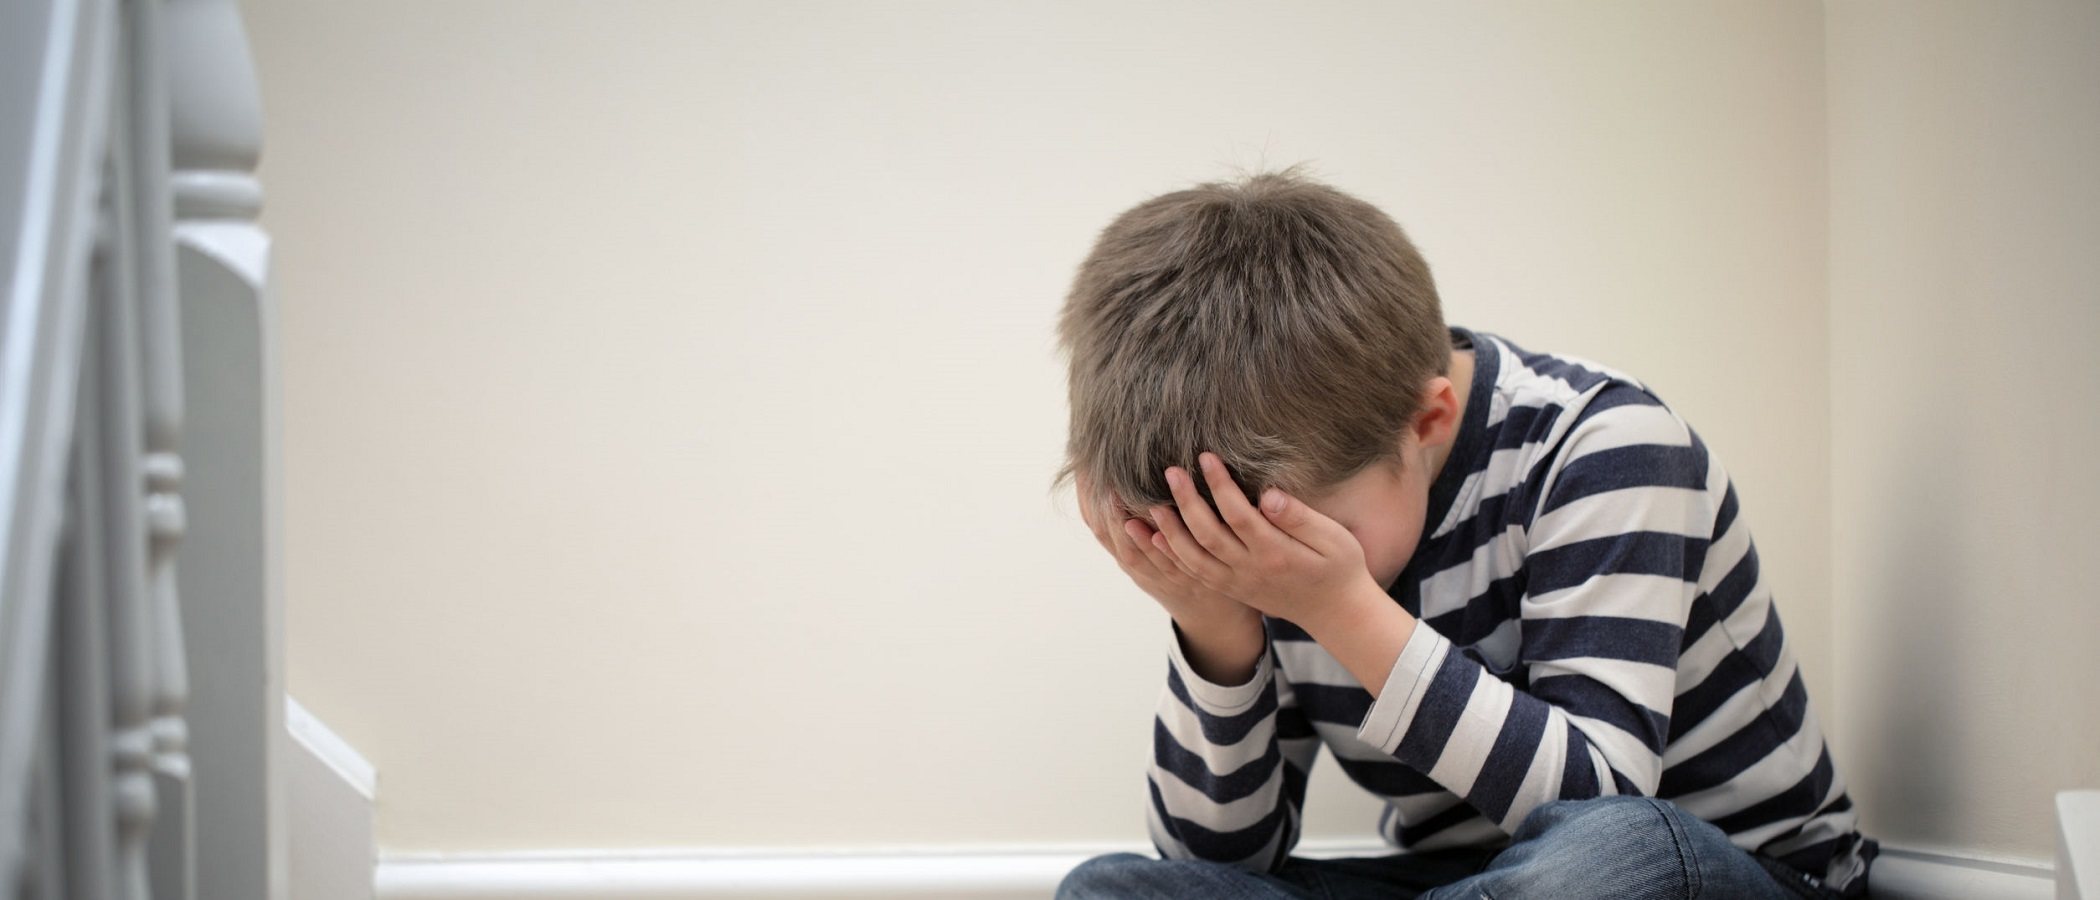 La negligencia parental, ¿causa depresión en los niños?